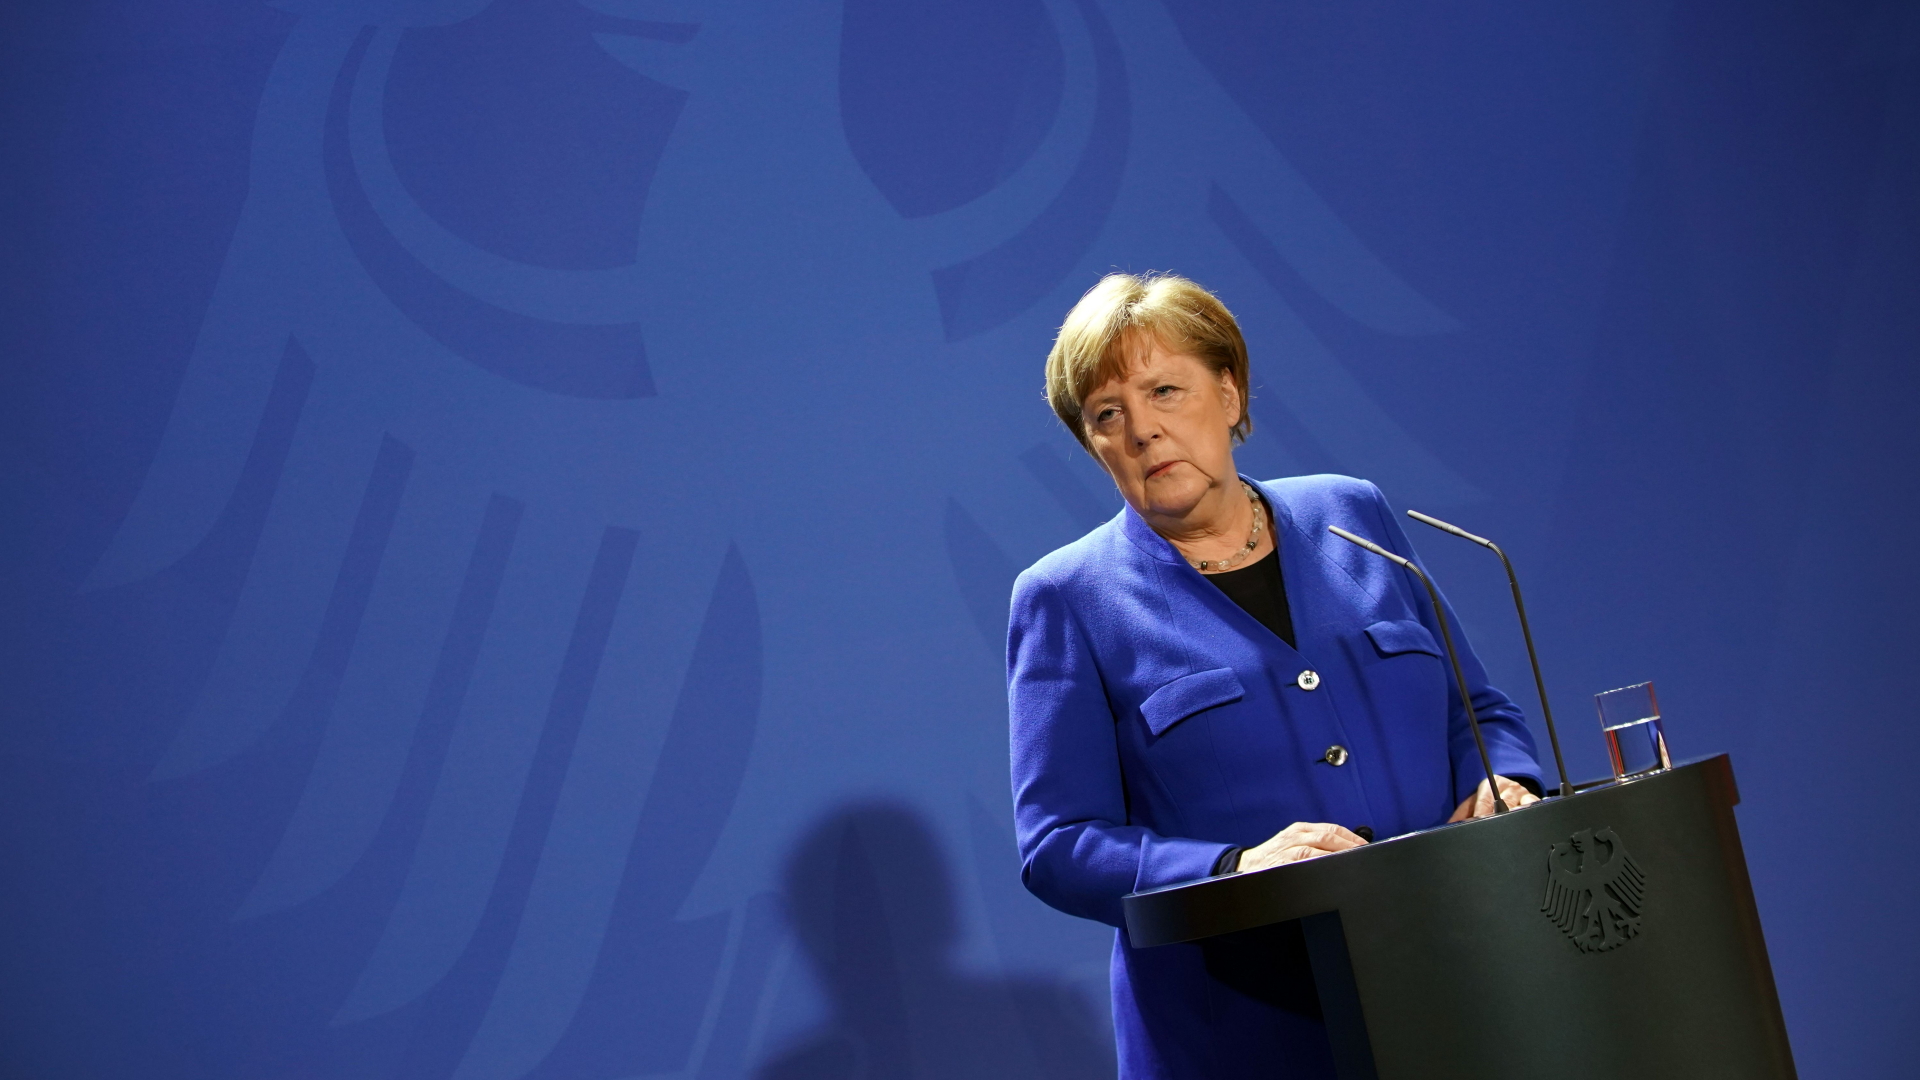 Bundeskanzlerin Merkel während einer Pressekonferenz in Berlin | CLEMENS BILAN/POOL/EPA-EFE/Shutt